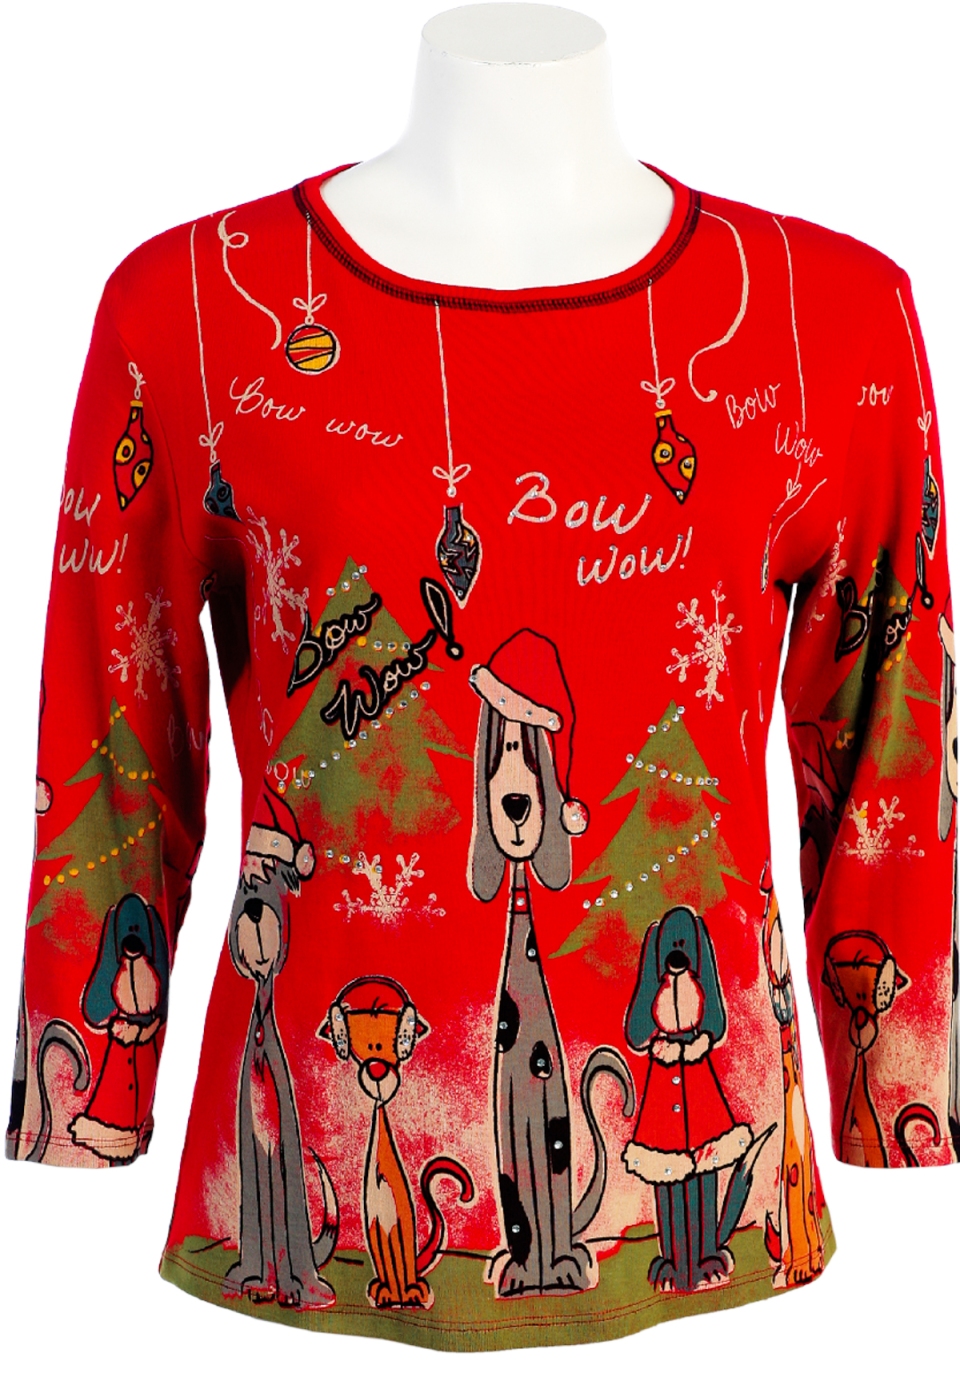 Bow Wow Christmas Ladies Cotton Rhinestone Holiday T Shirt